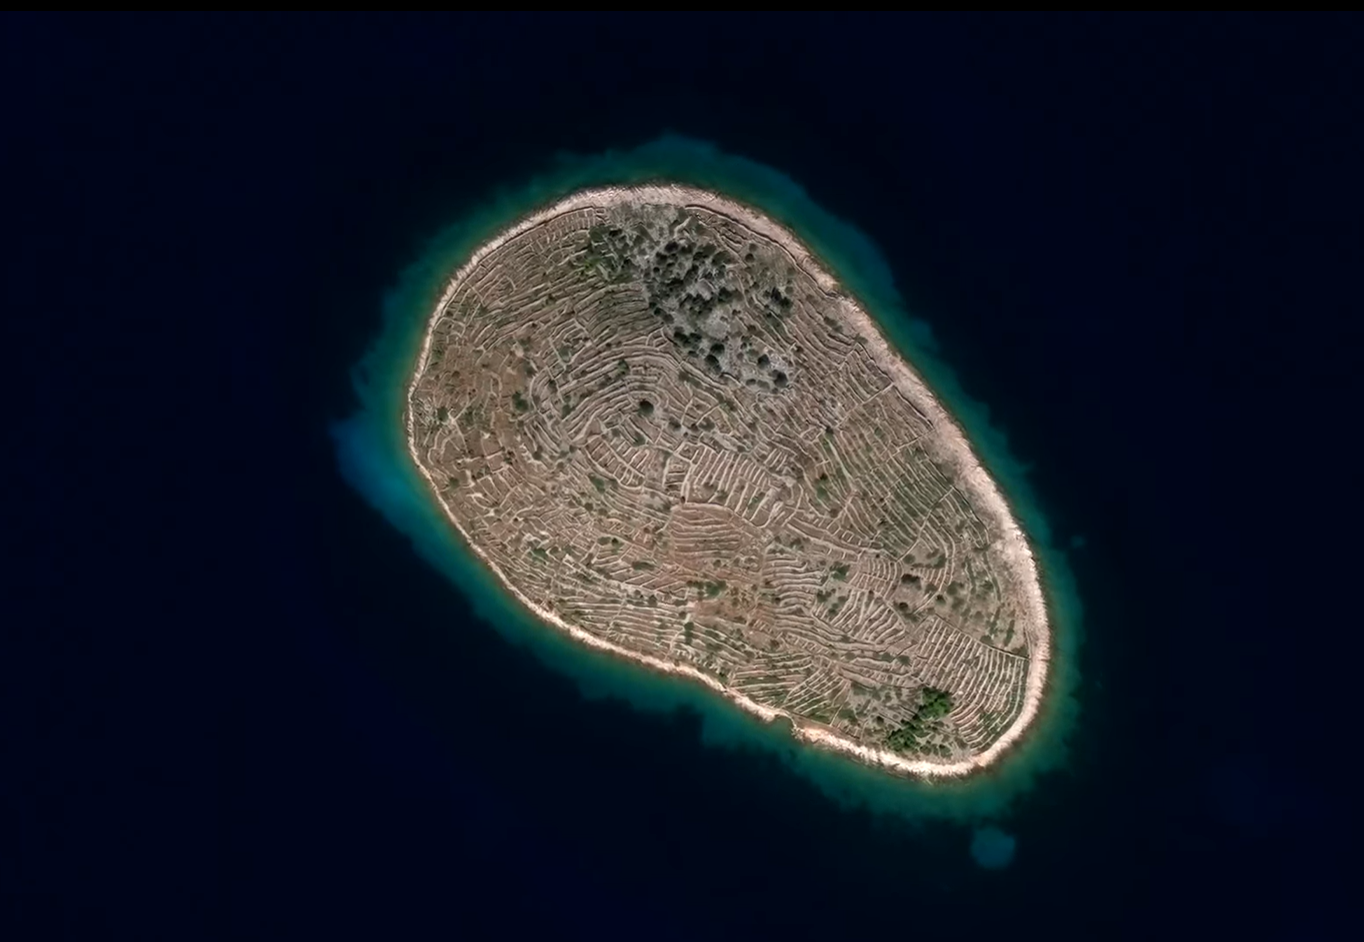 Το νησί “δακτυλικό αποτύπωμα”. Είναι ακατοίκητο και διαθέτει χιλιάδες ξερολιθιές. Ποιοι και γιατί το διαμόρφωσαν έτσι (φωτο)